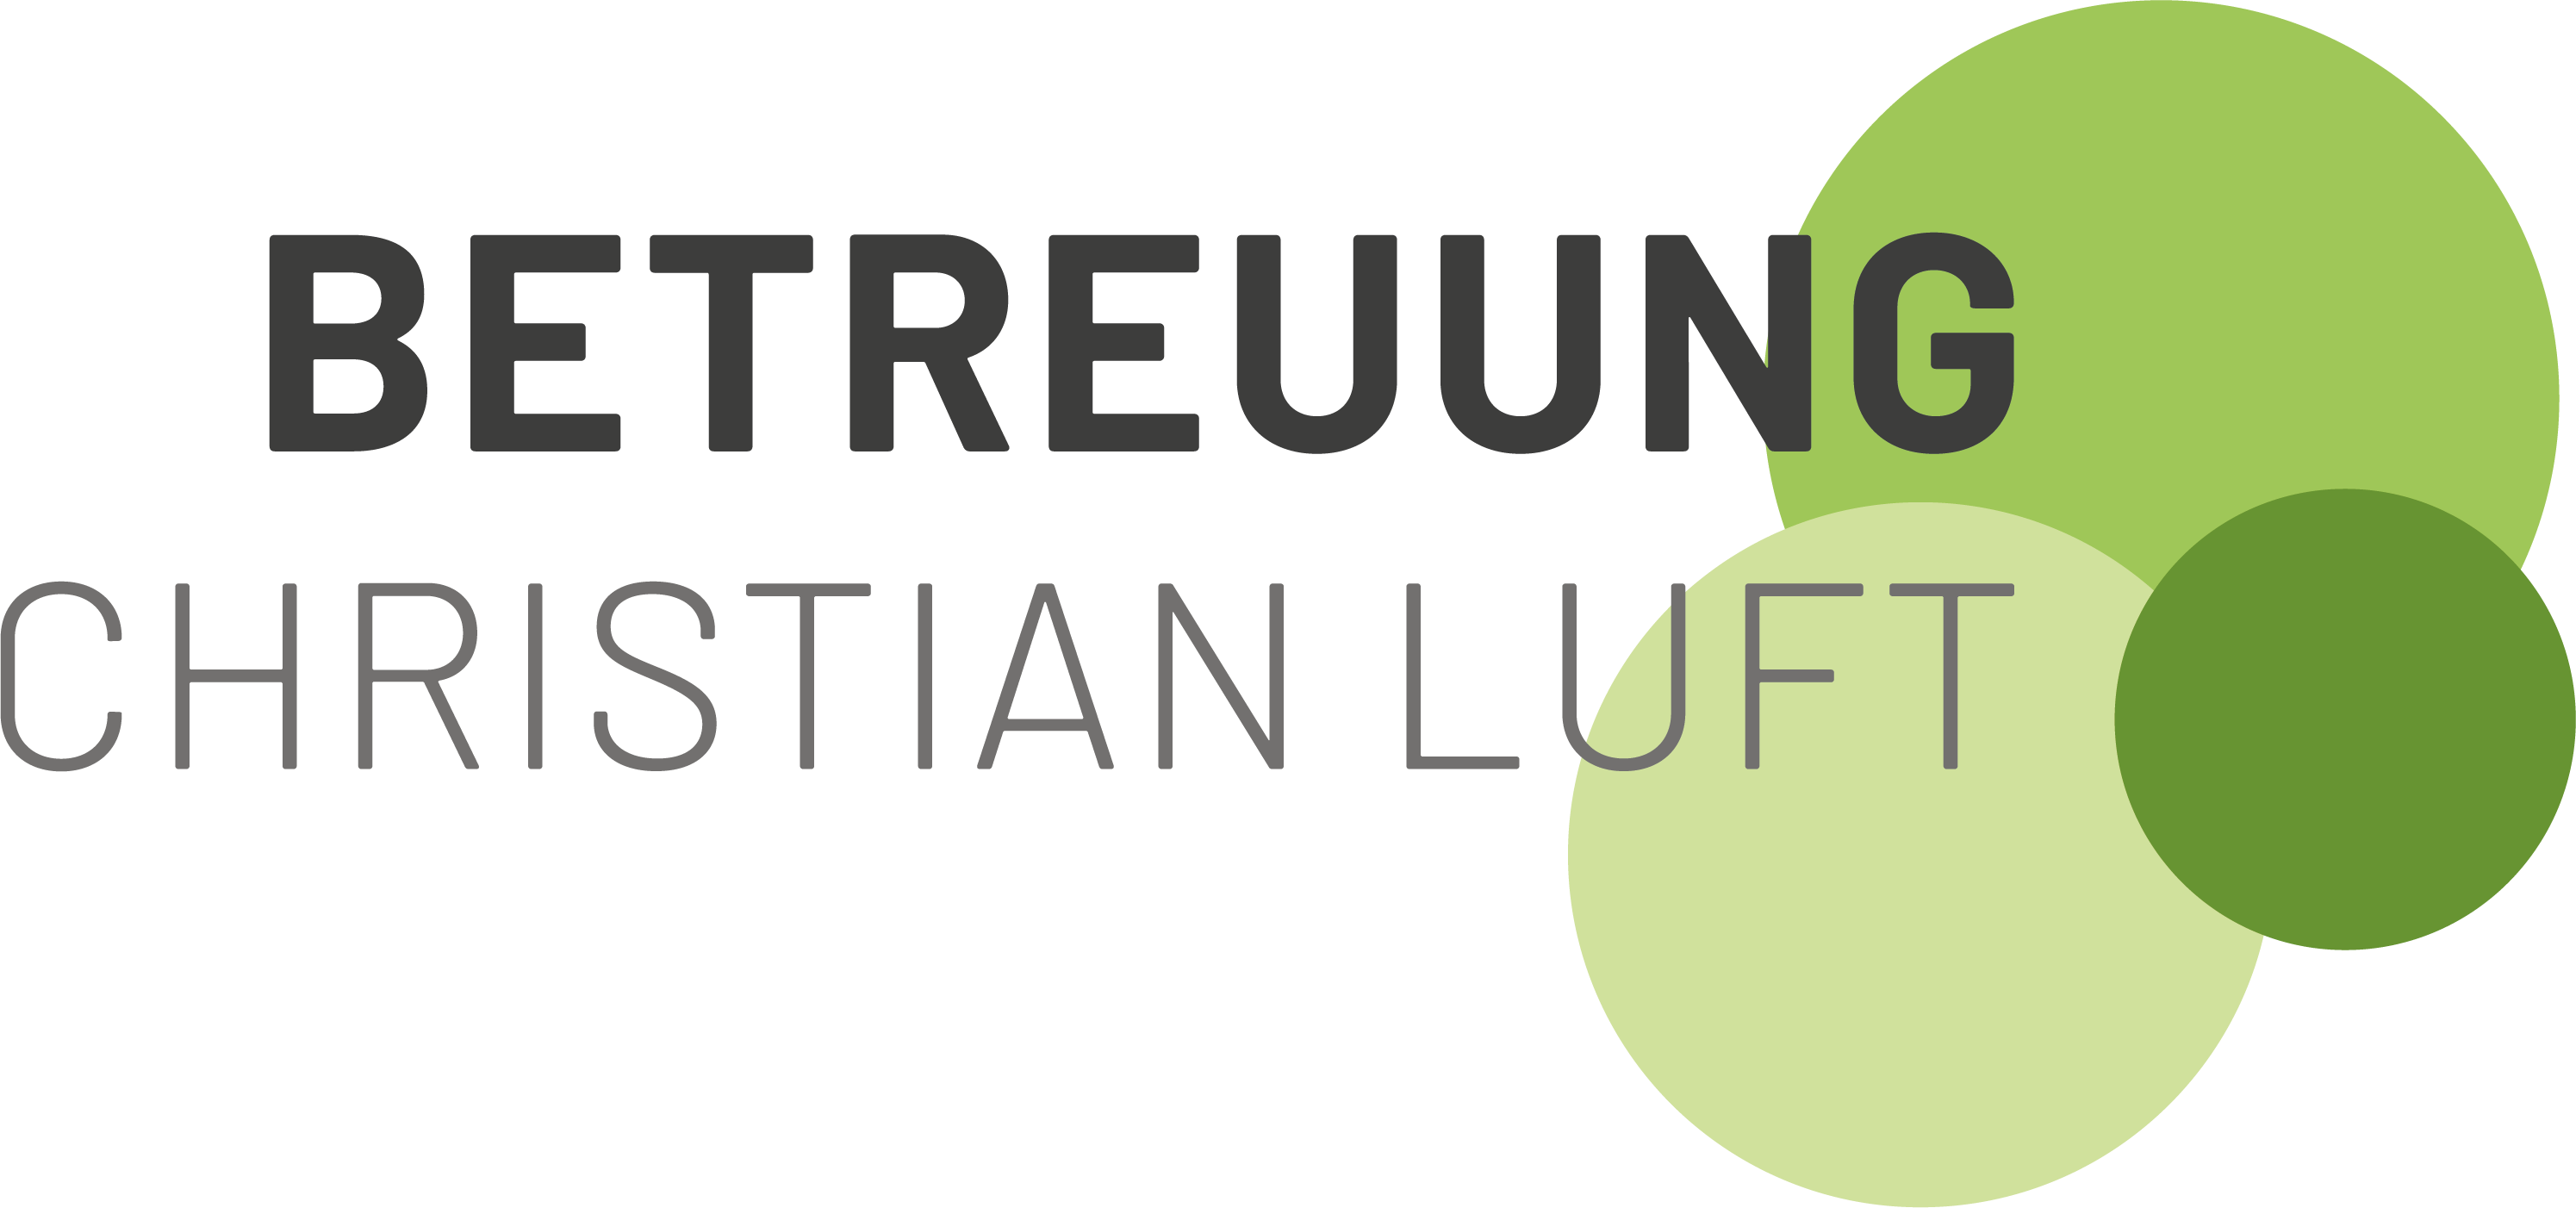 Betreuung Christian Luft Logo